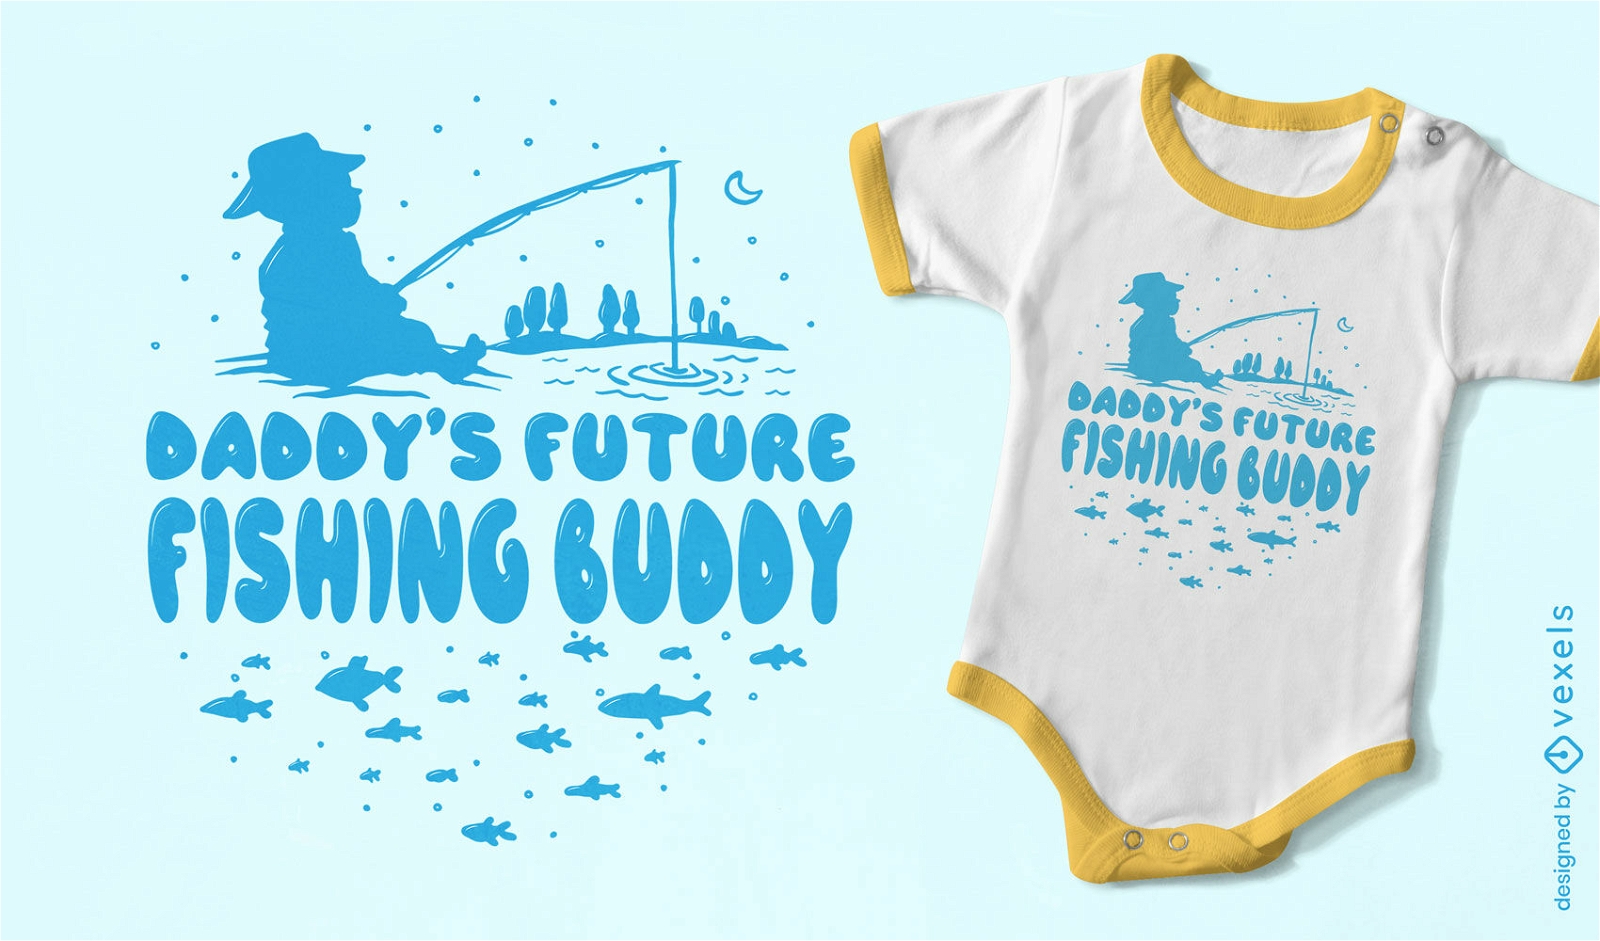 Dise?o de camiseta de pap? pescando beb?